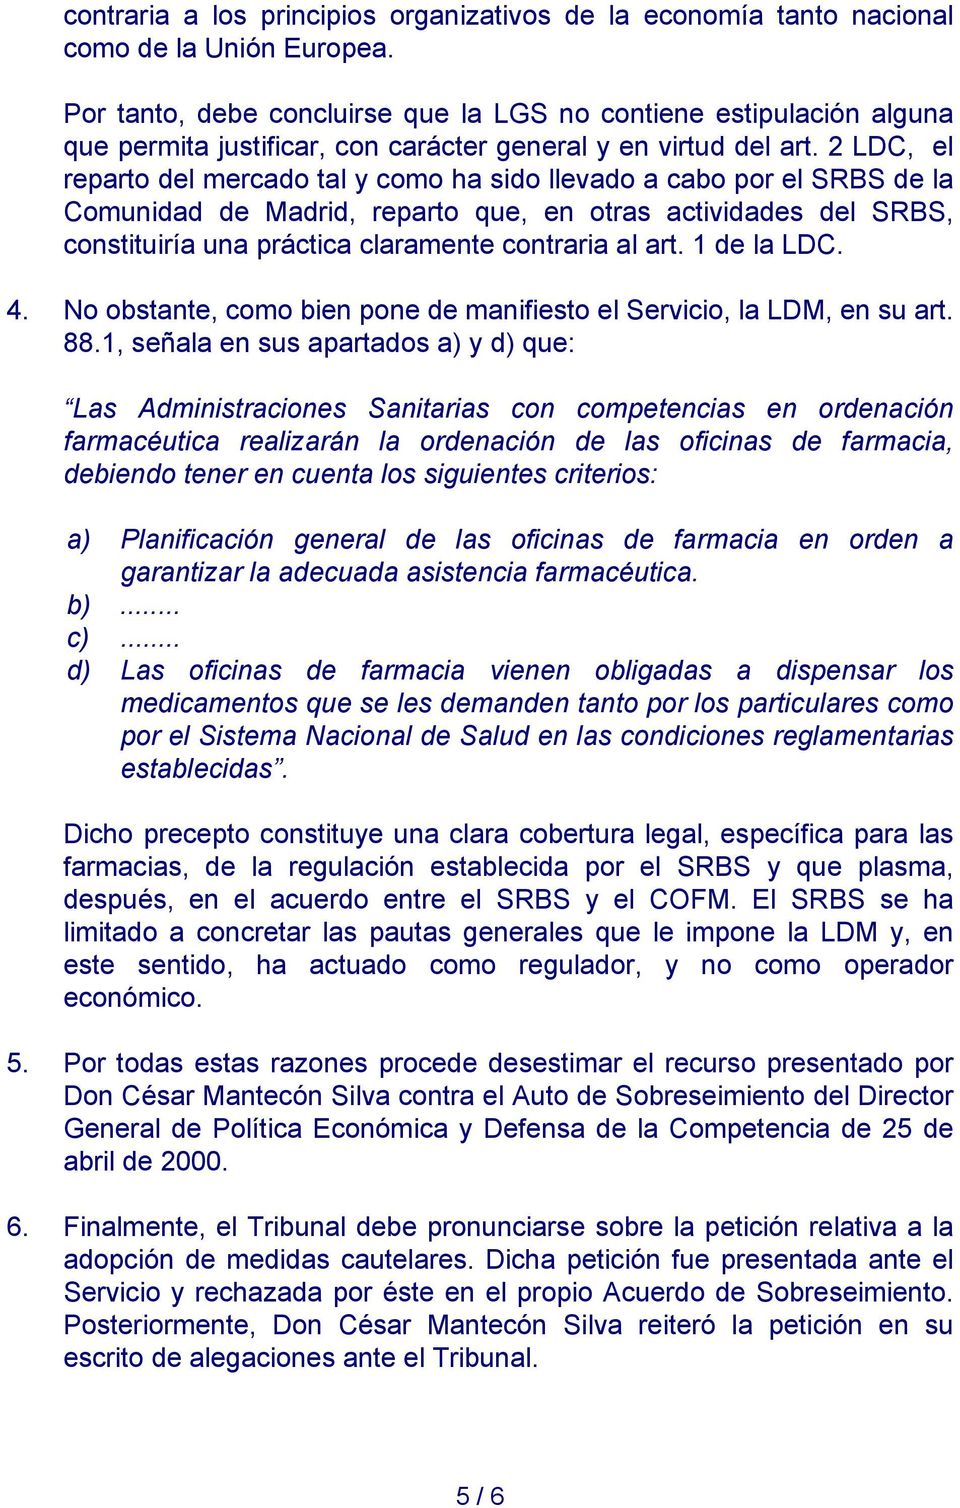 2 LDC, el reparto del mercado tal y como ha sido llevado a cabo por el SRBS de la Comunidad de Madrid, reparto que, en otras actividades del SRBS, constituiría una práctica claramente contraria al